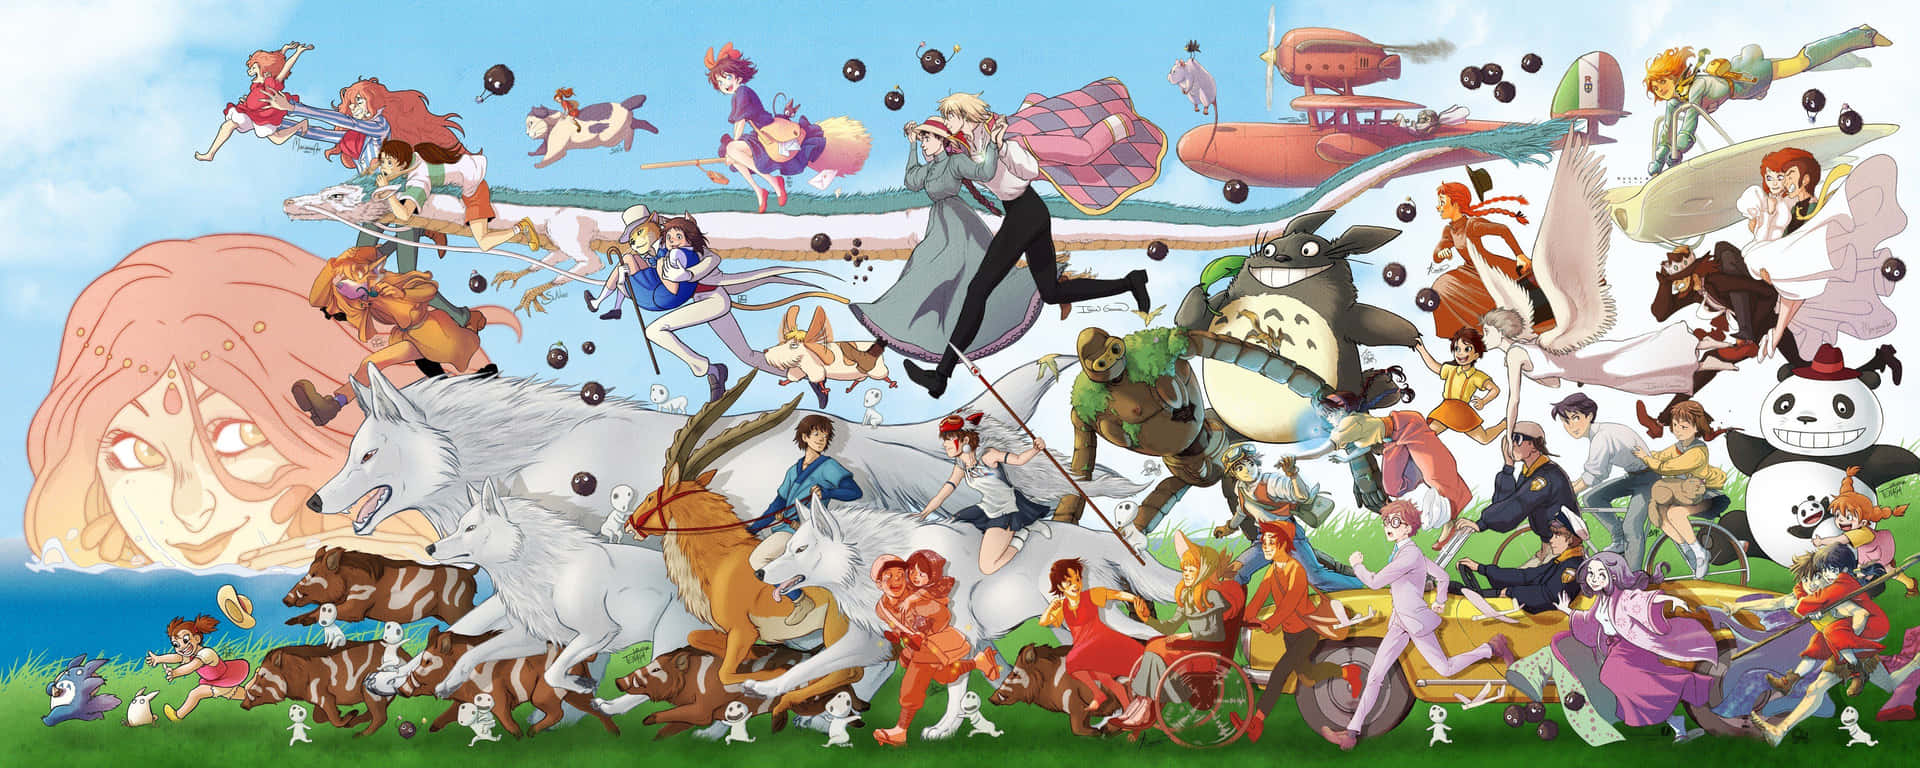 Upplevstudio Ghiblis Episka Fantasivärld I Princess Mononoke På Dator Eller Mobilskärmen. Wallpaper